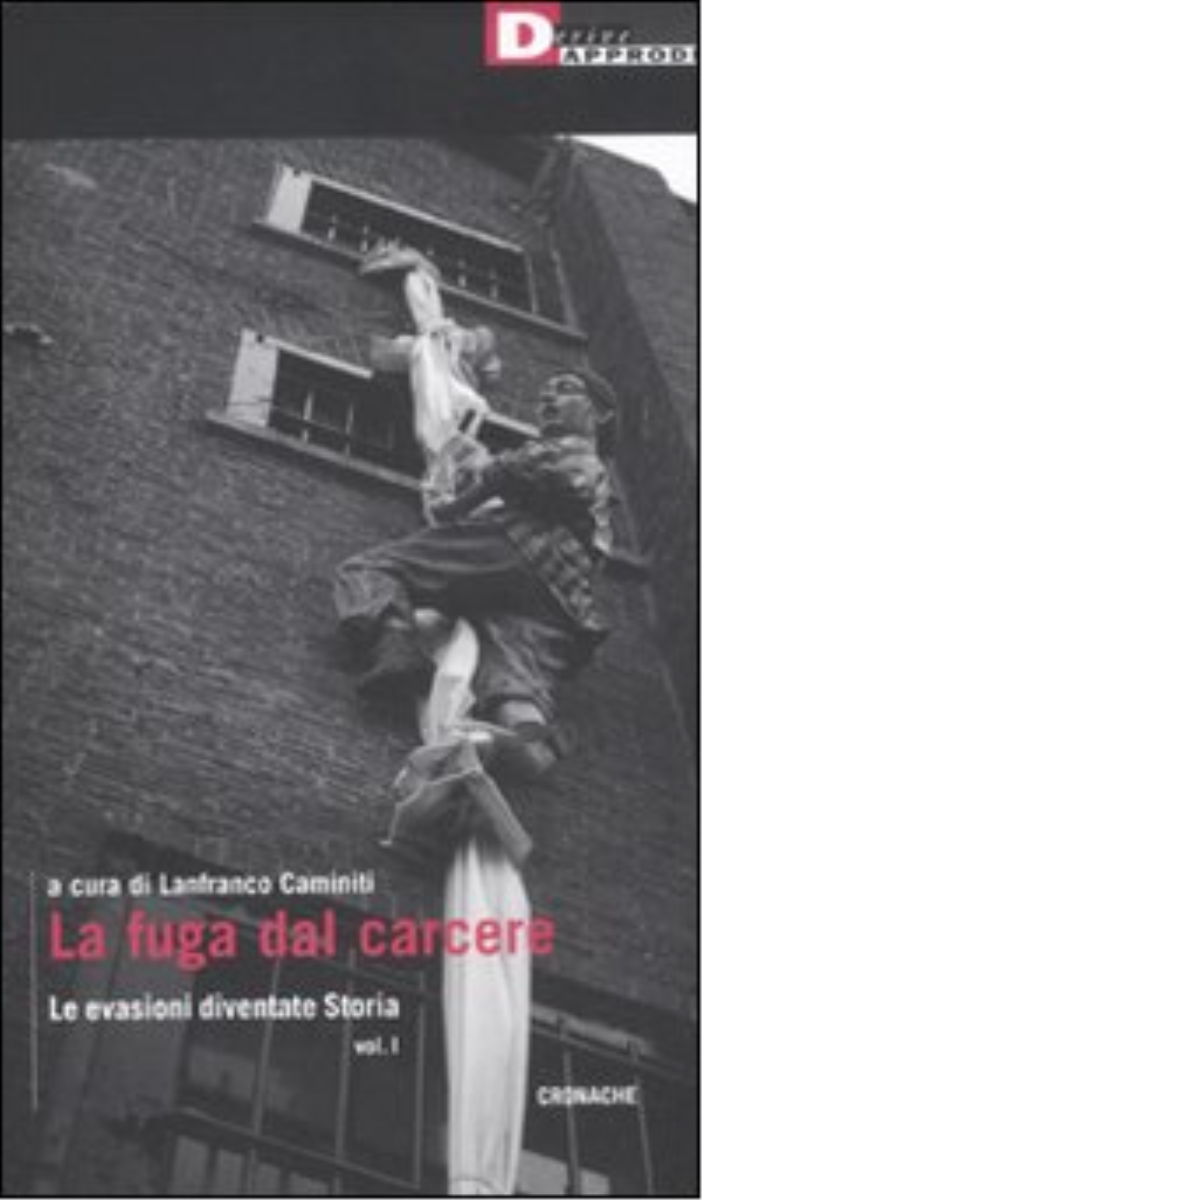 LA FUGA DAL CARCERE. di AA.VV. - DeriveApprodi editore, 2011